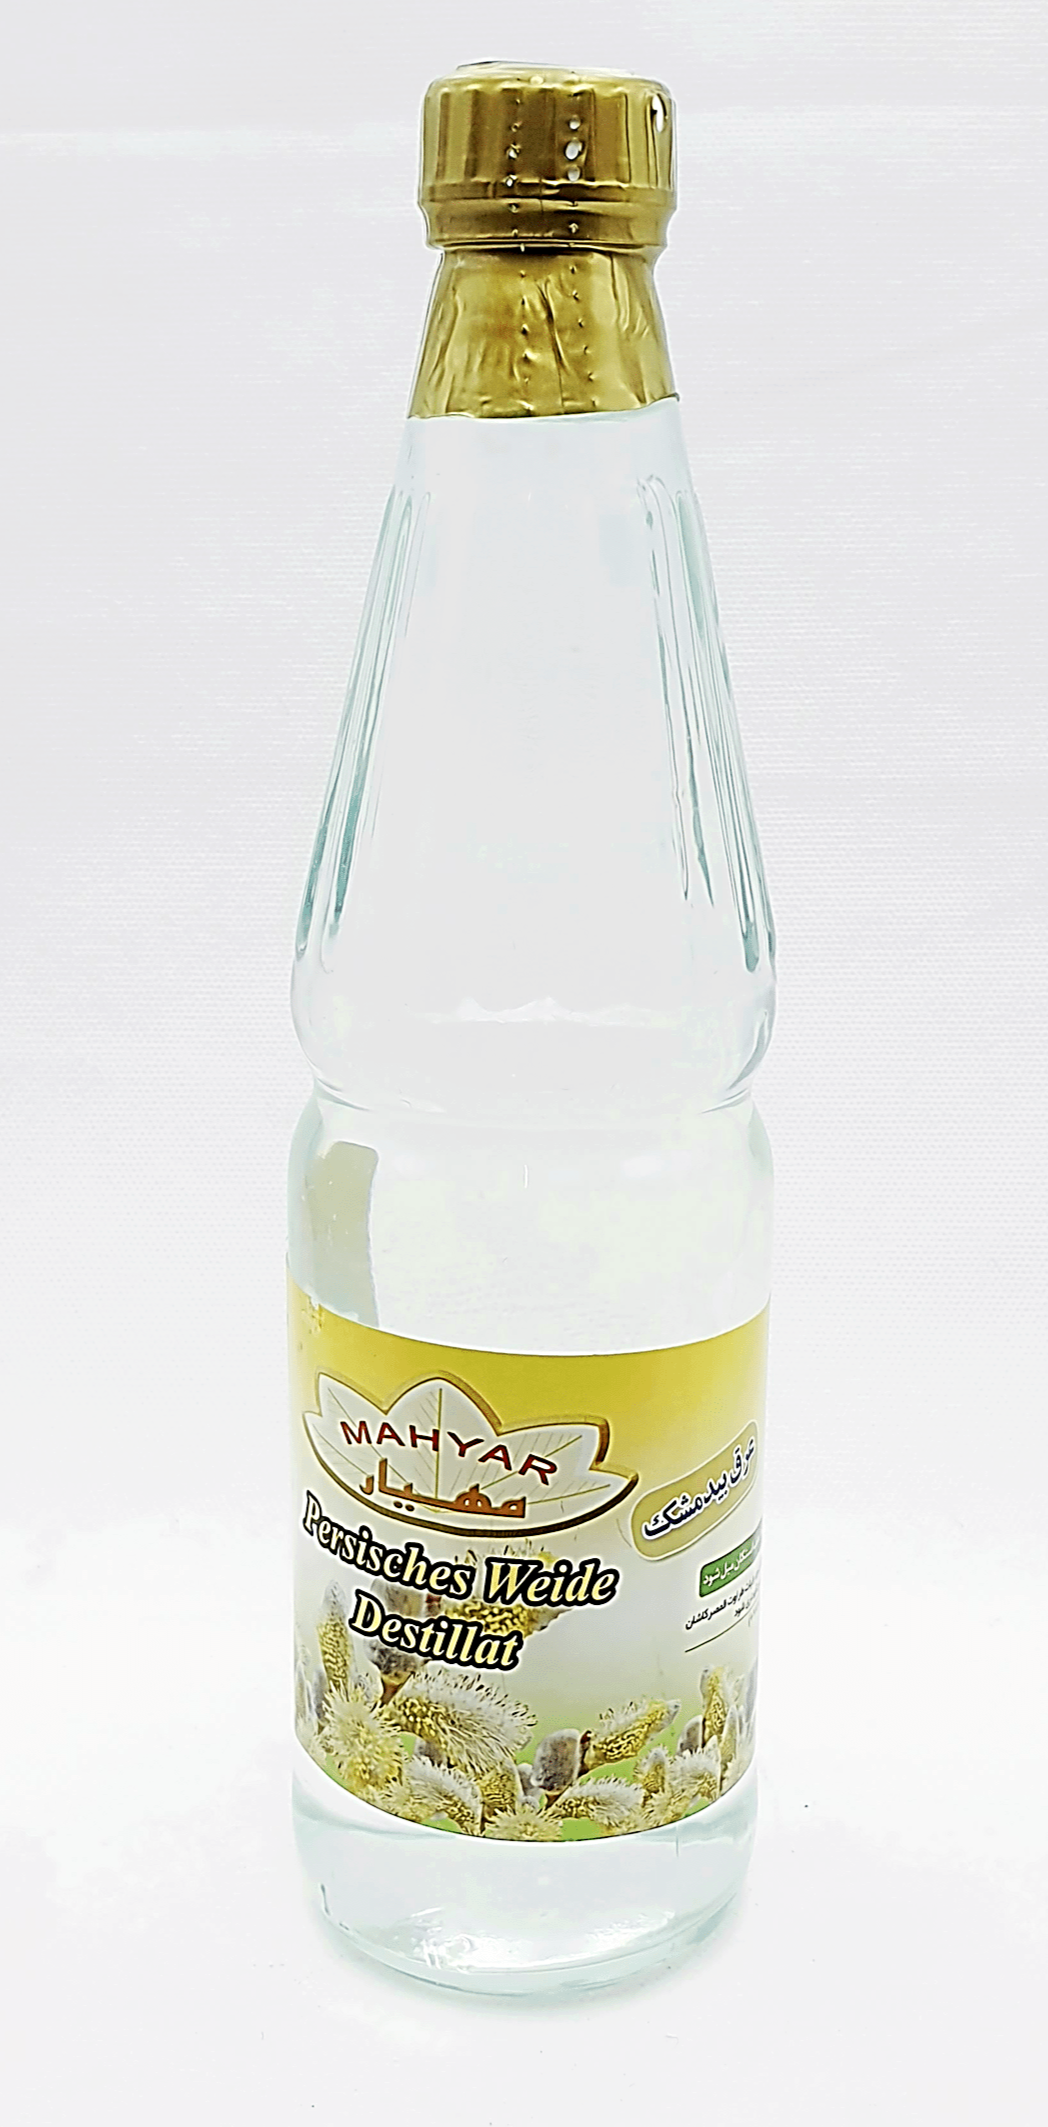 Mahyar Araghe Bidmeshk - Persisches Weide Destillat 430ml - Persienmarkt